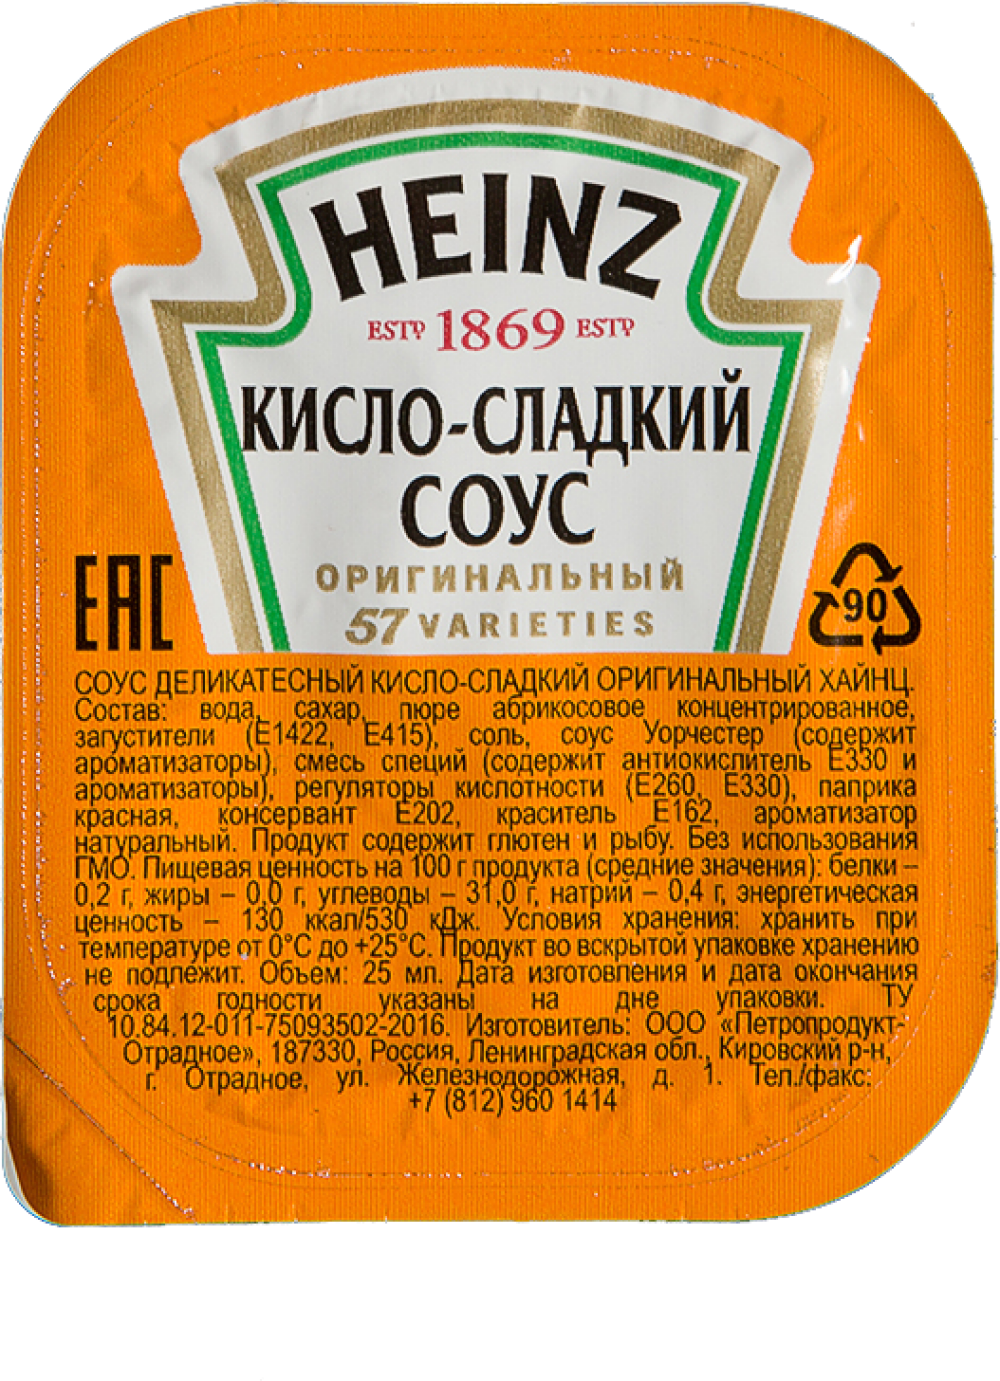 Кисло-сладкий соус «Heinz»